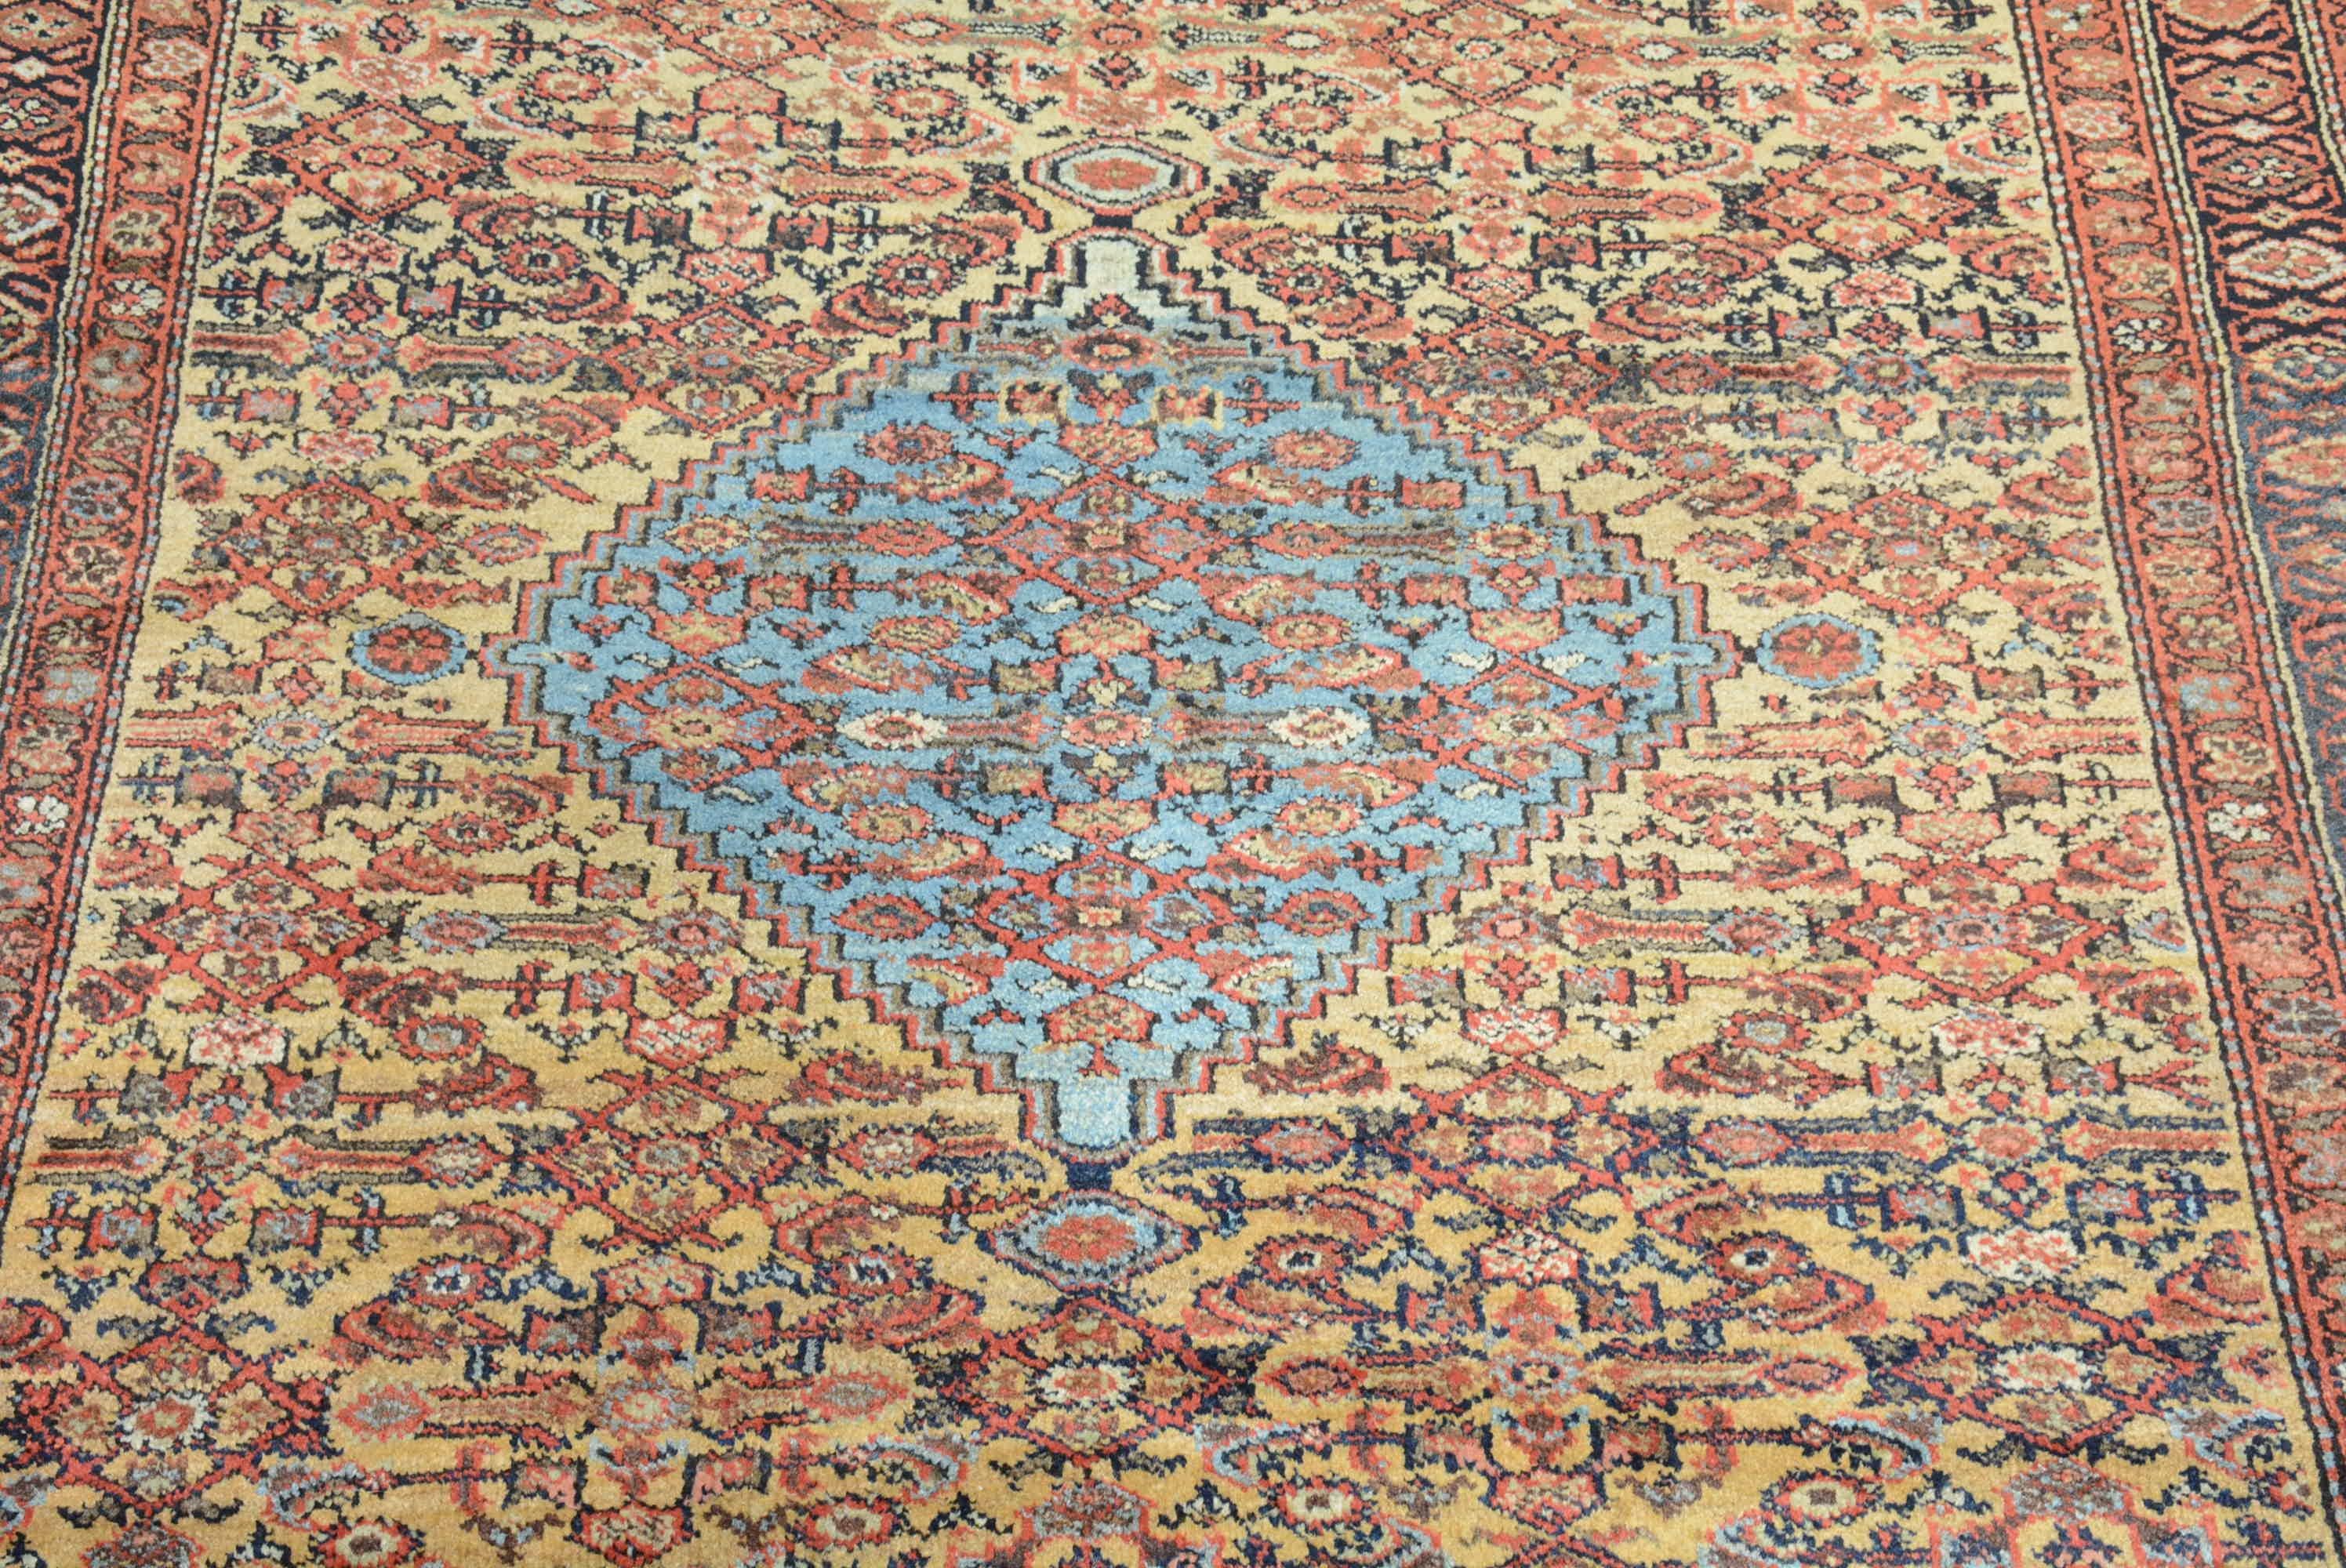 Teppiche aus dem Bezirk Fereghan in Nordpersien vereinen sorgfältig geometrische Einflüsse benachbarter westlicher Stämme mit einer raffinierten kurvenreichen Ästhetik, wie in diesem Beispiel zu sehen.